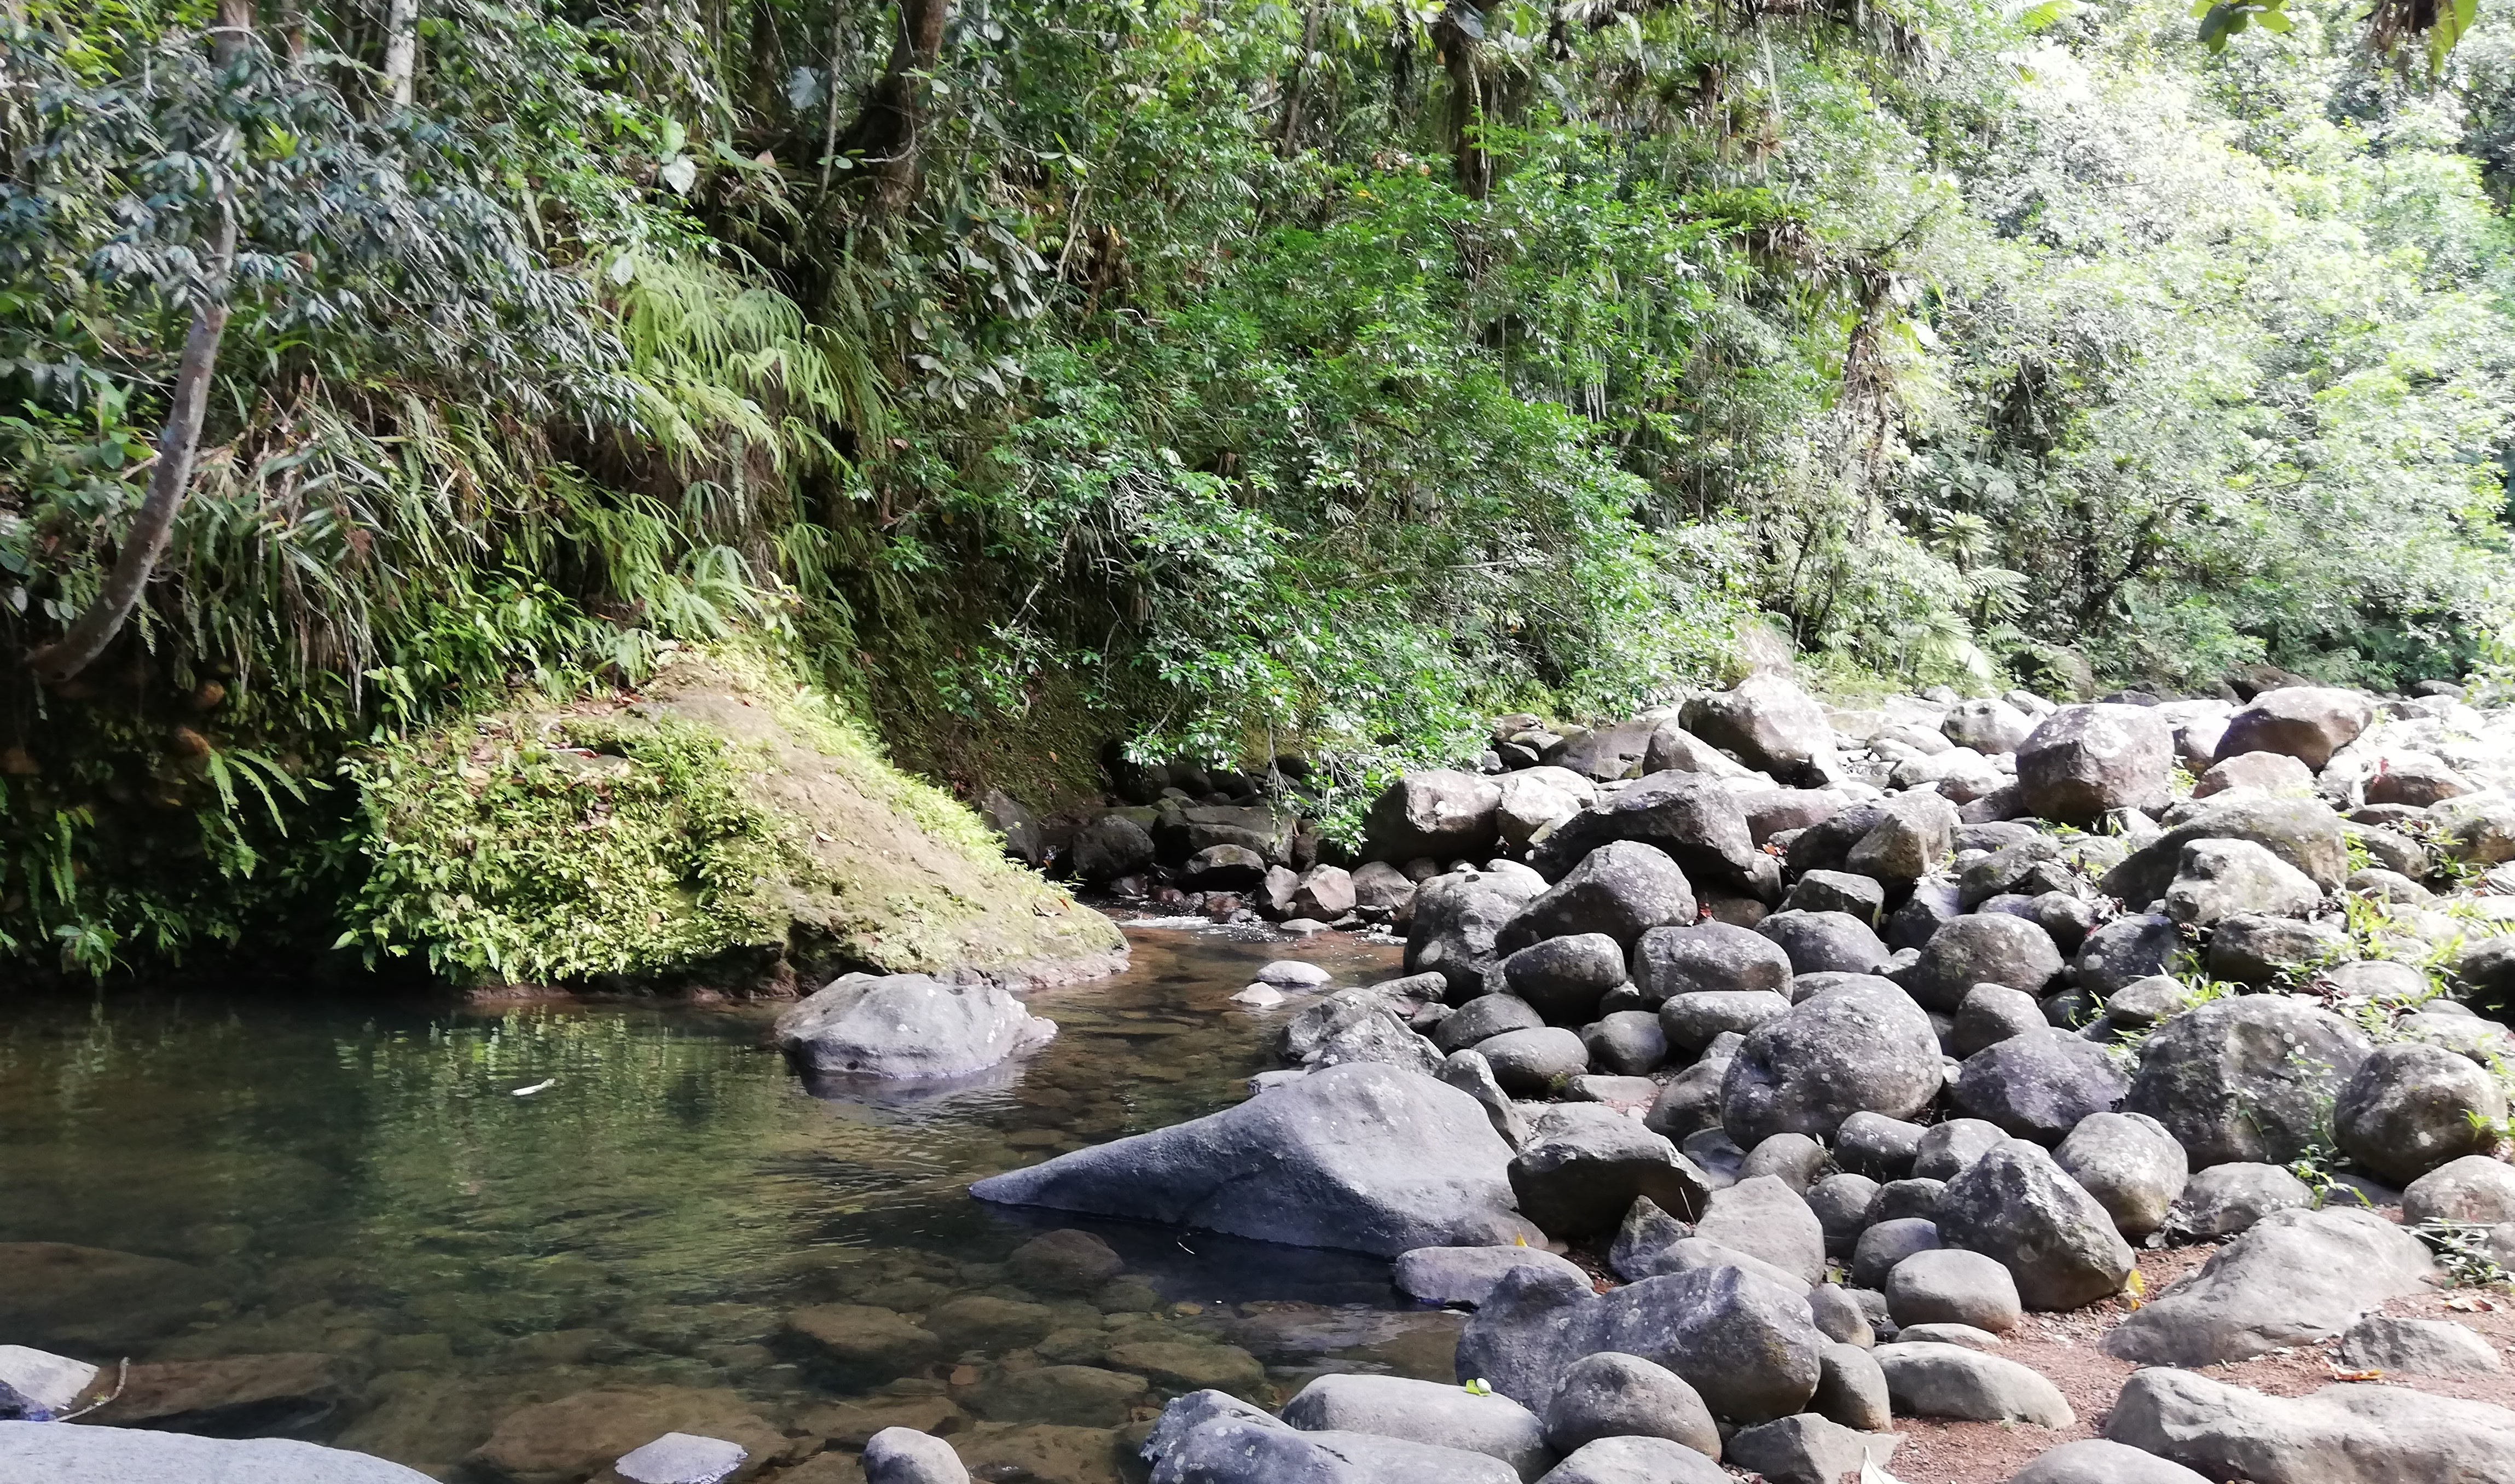     Les rivières de Martinique à nouveau en situation critique (préfecture)

